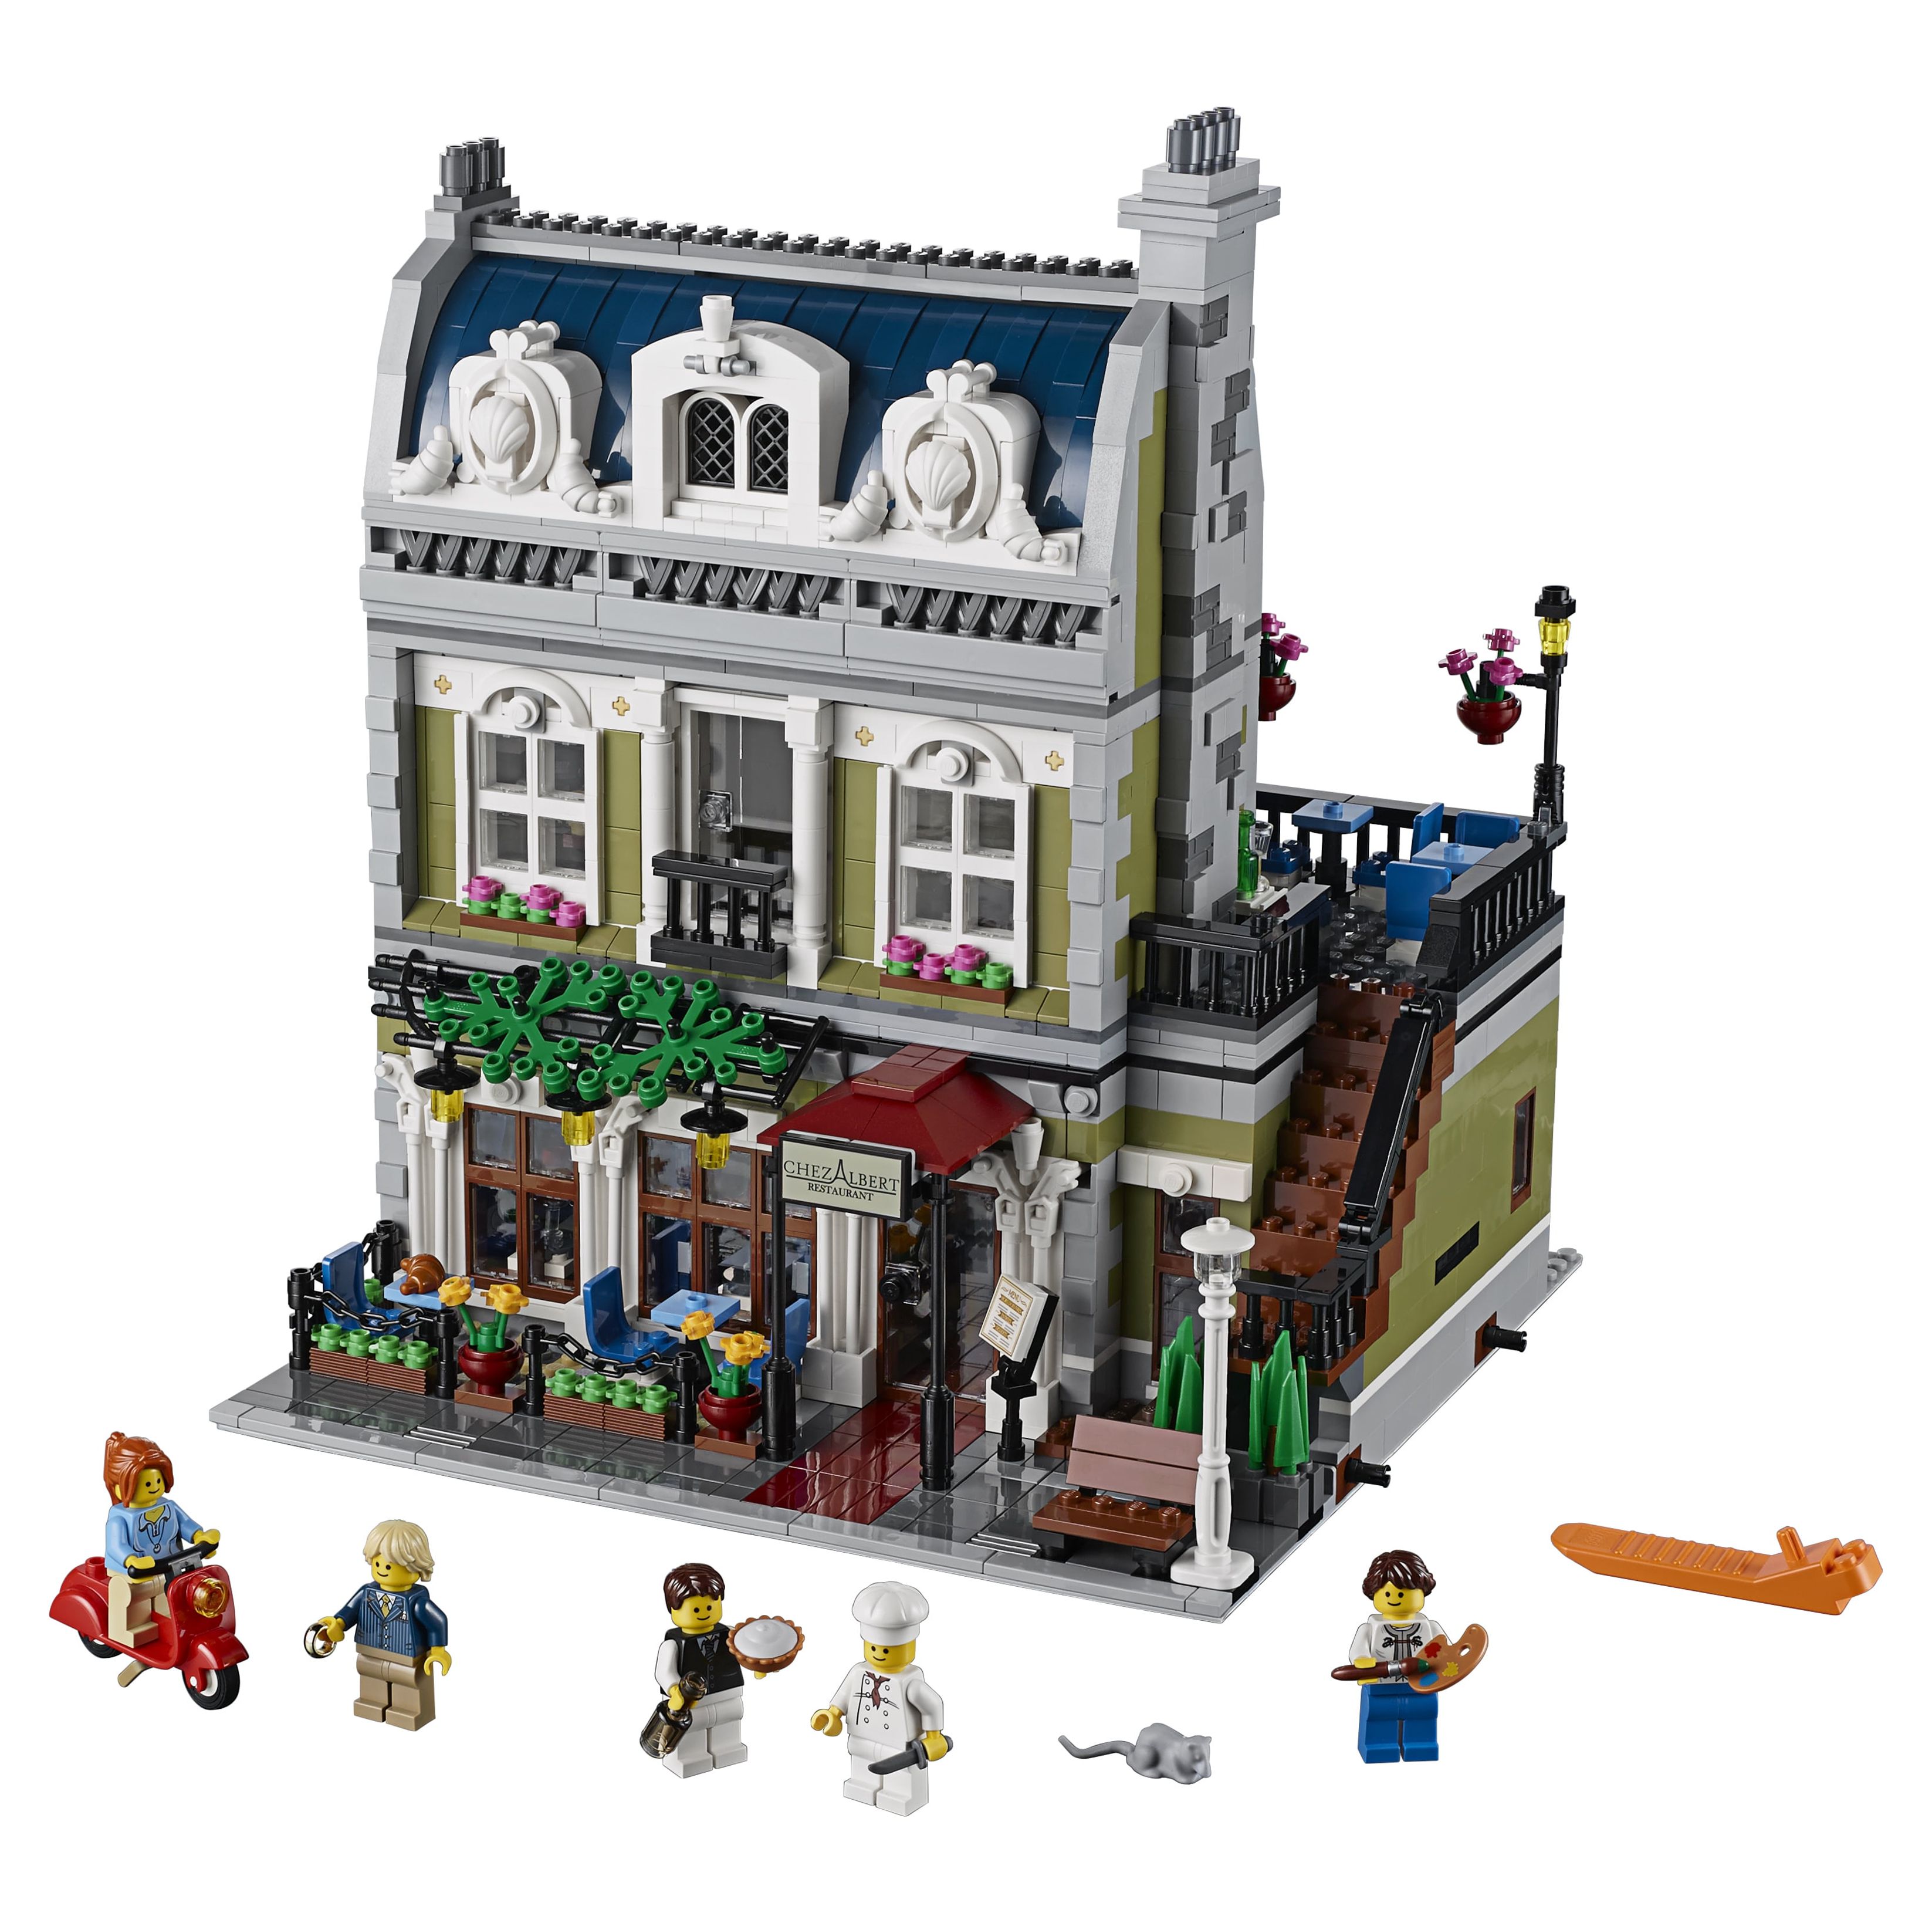 LEGO Creator Expert Parisian Restaurant 10243 - image 2 of 4